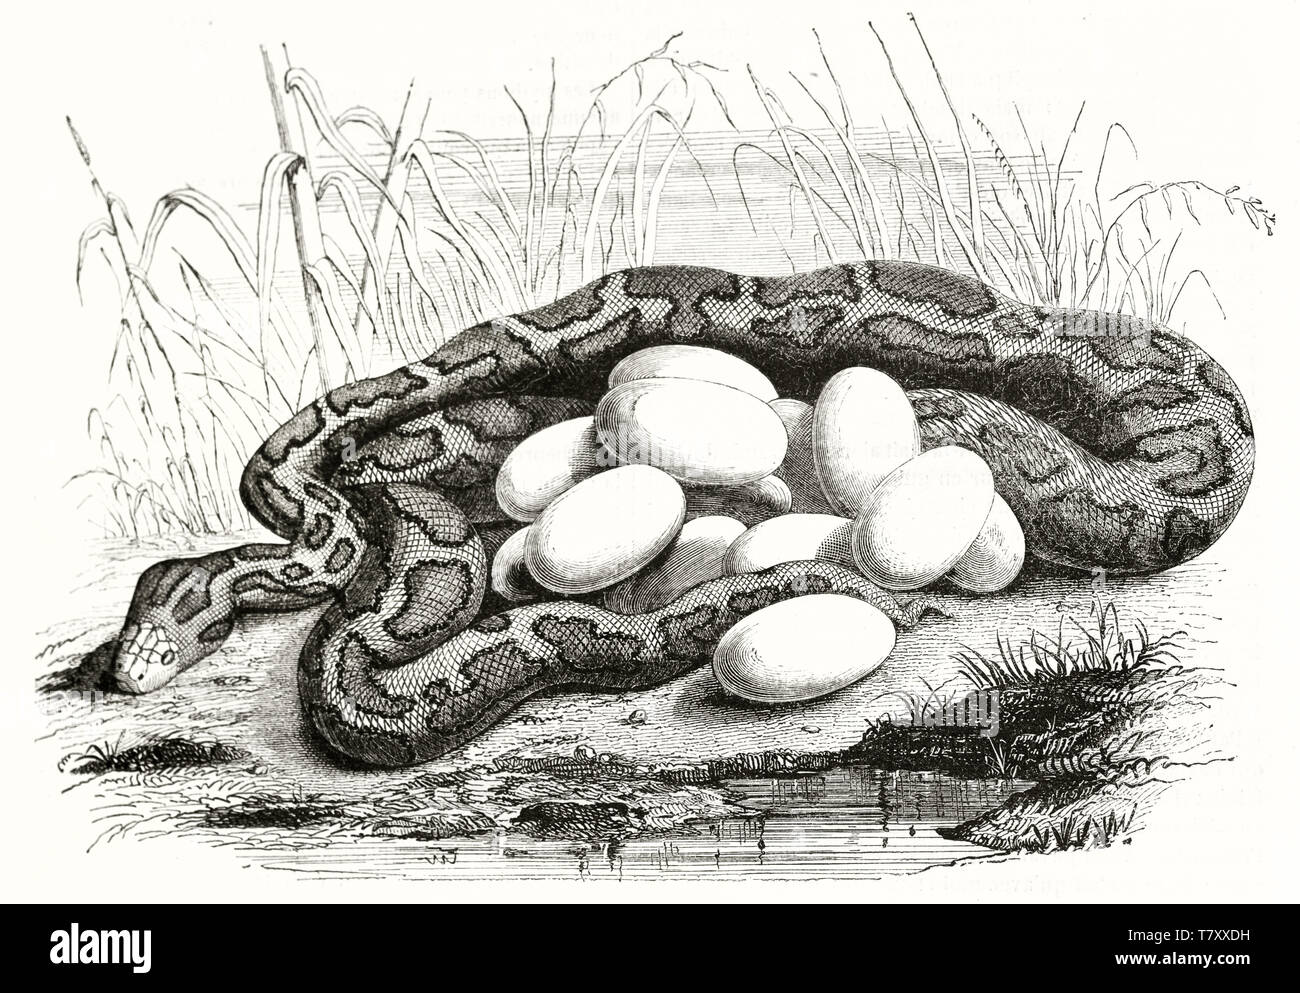 Alte naturalistischen Radierung stil Abbildung aus einem gerollten Python im hohen Gras verstecken, seine Eier brüten in der Nähe von einem kleinen Teich. Von Warner publ. Auf Magasin Pittoresque Paris 1848 Stockfoto